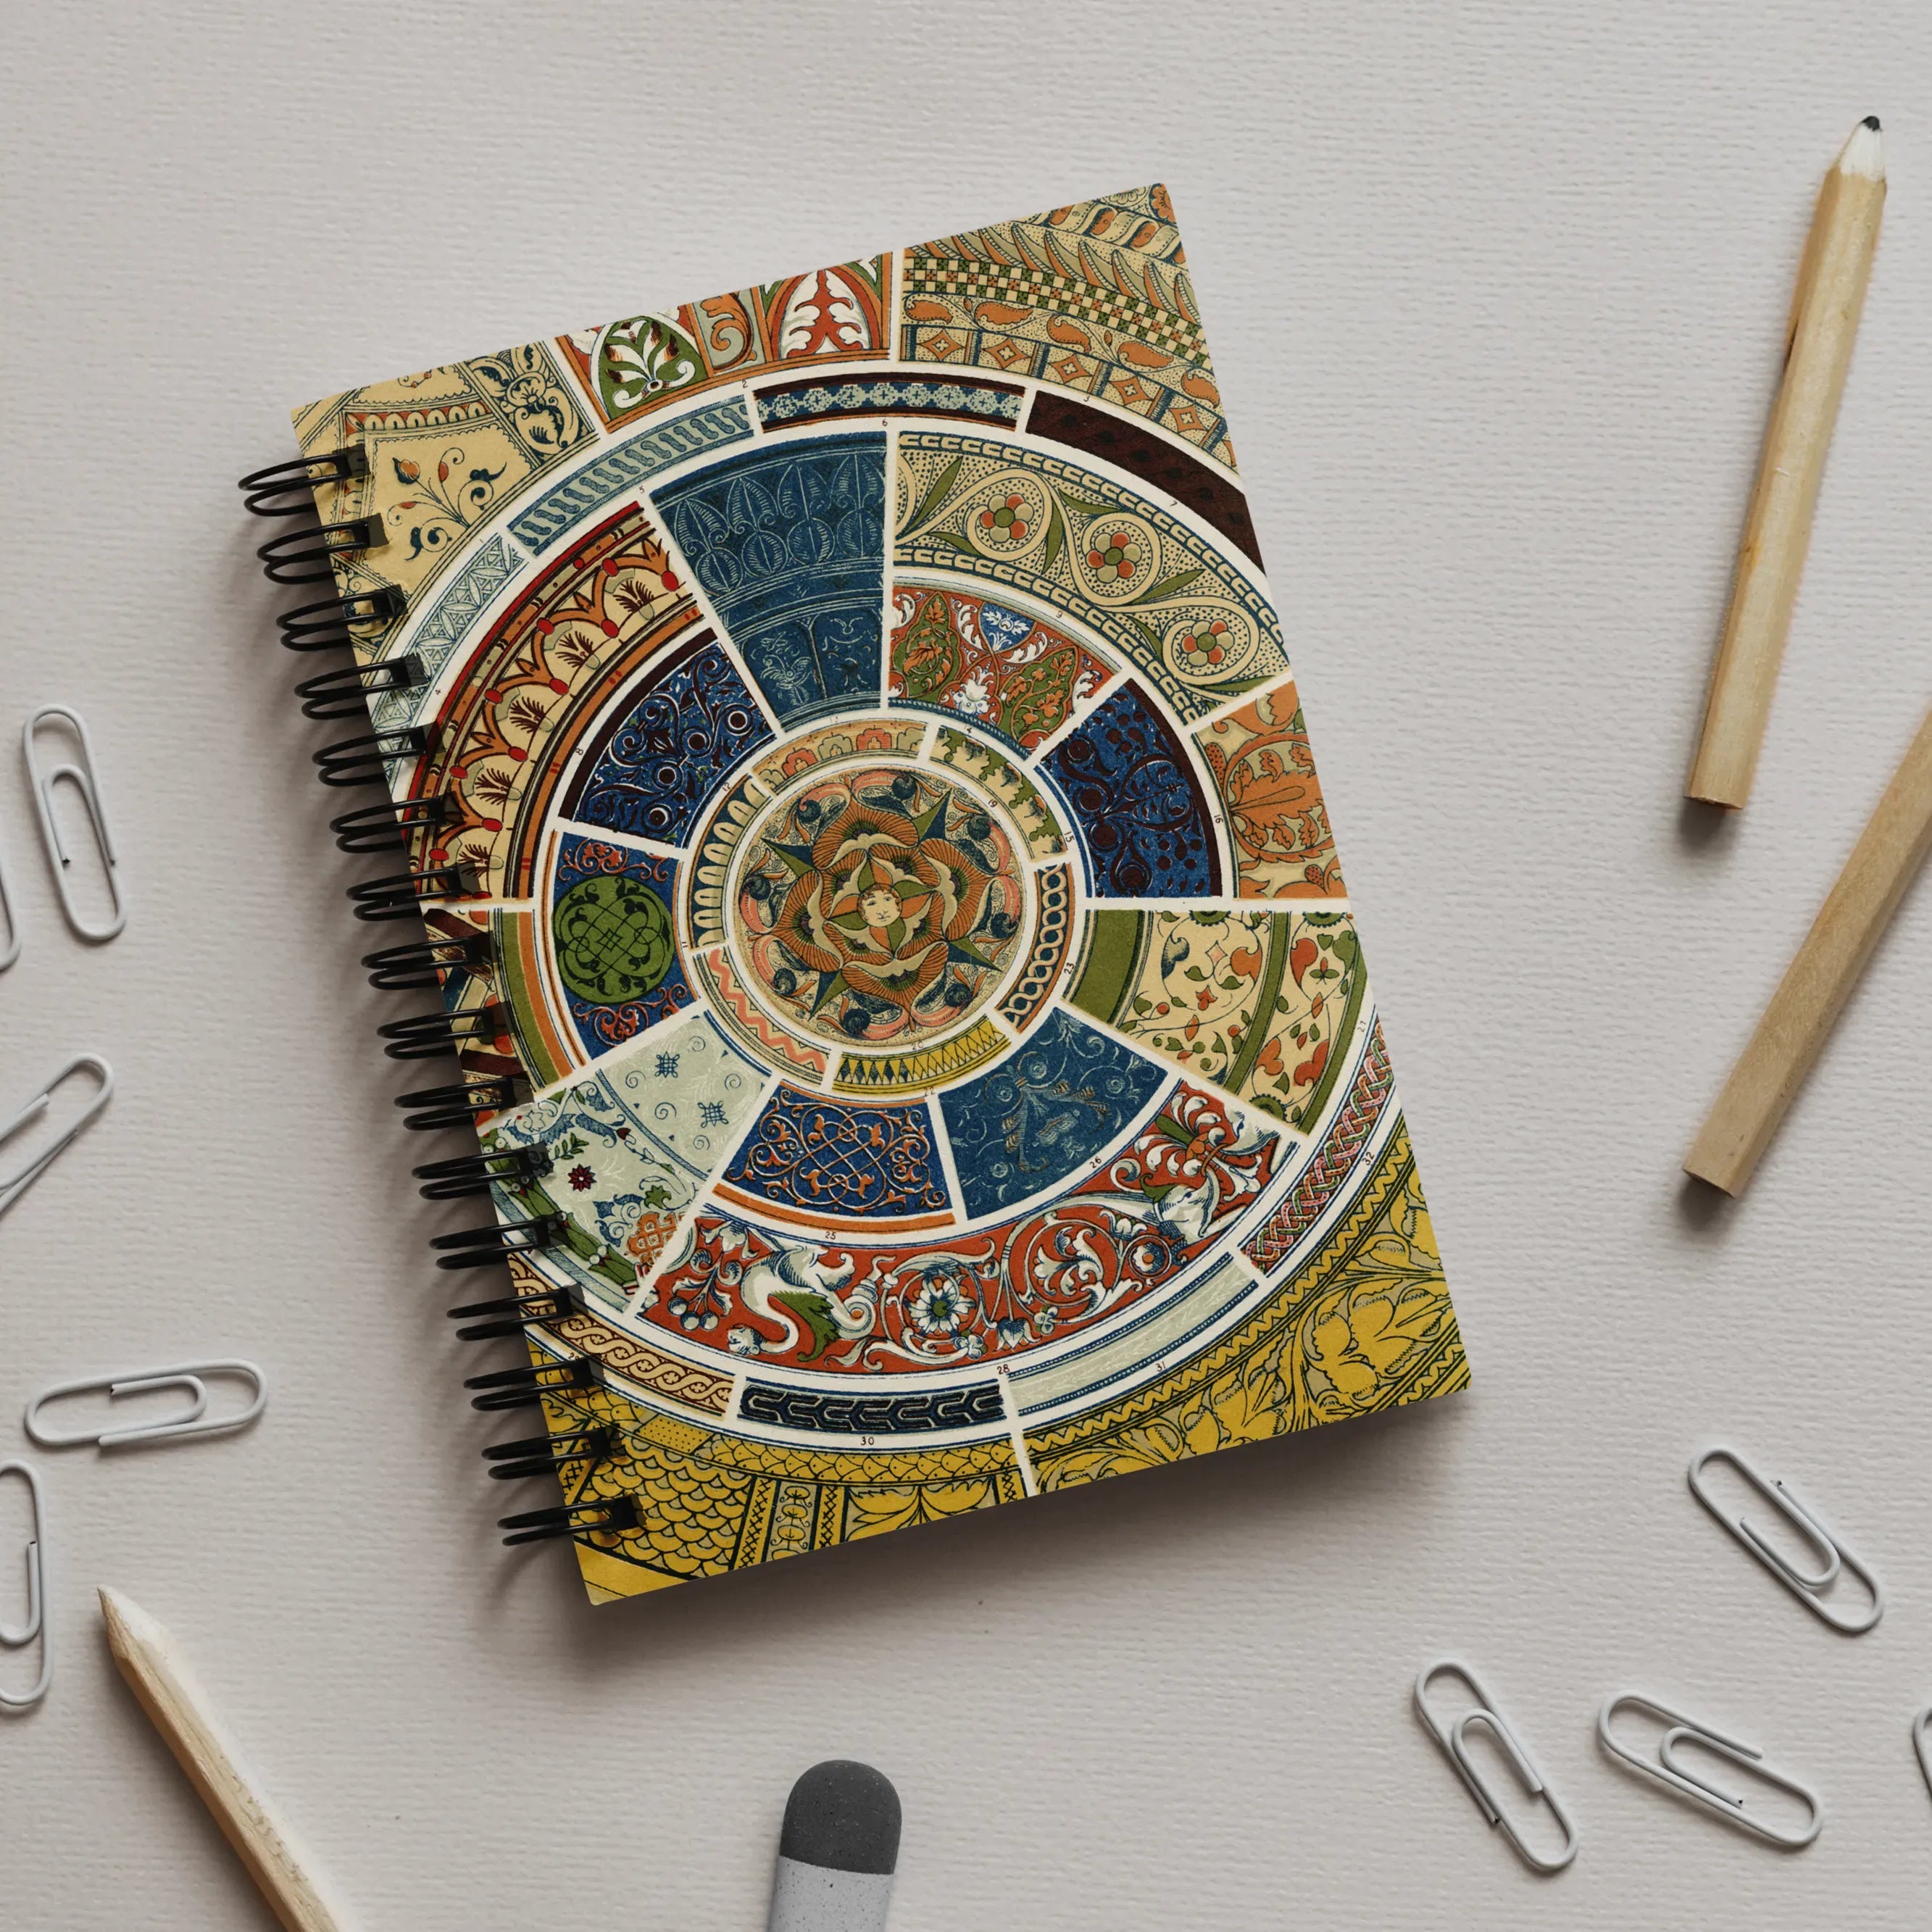 Another Grammar Of Ornament Pattern By Owen Jones Notebook - Notebooks & Notepads - Aesthetic Art